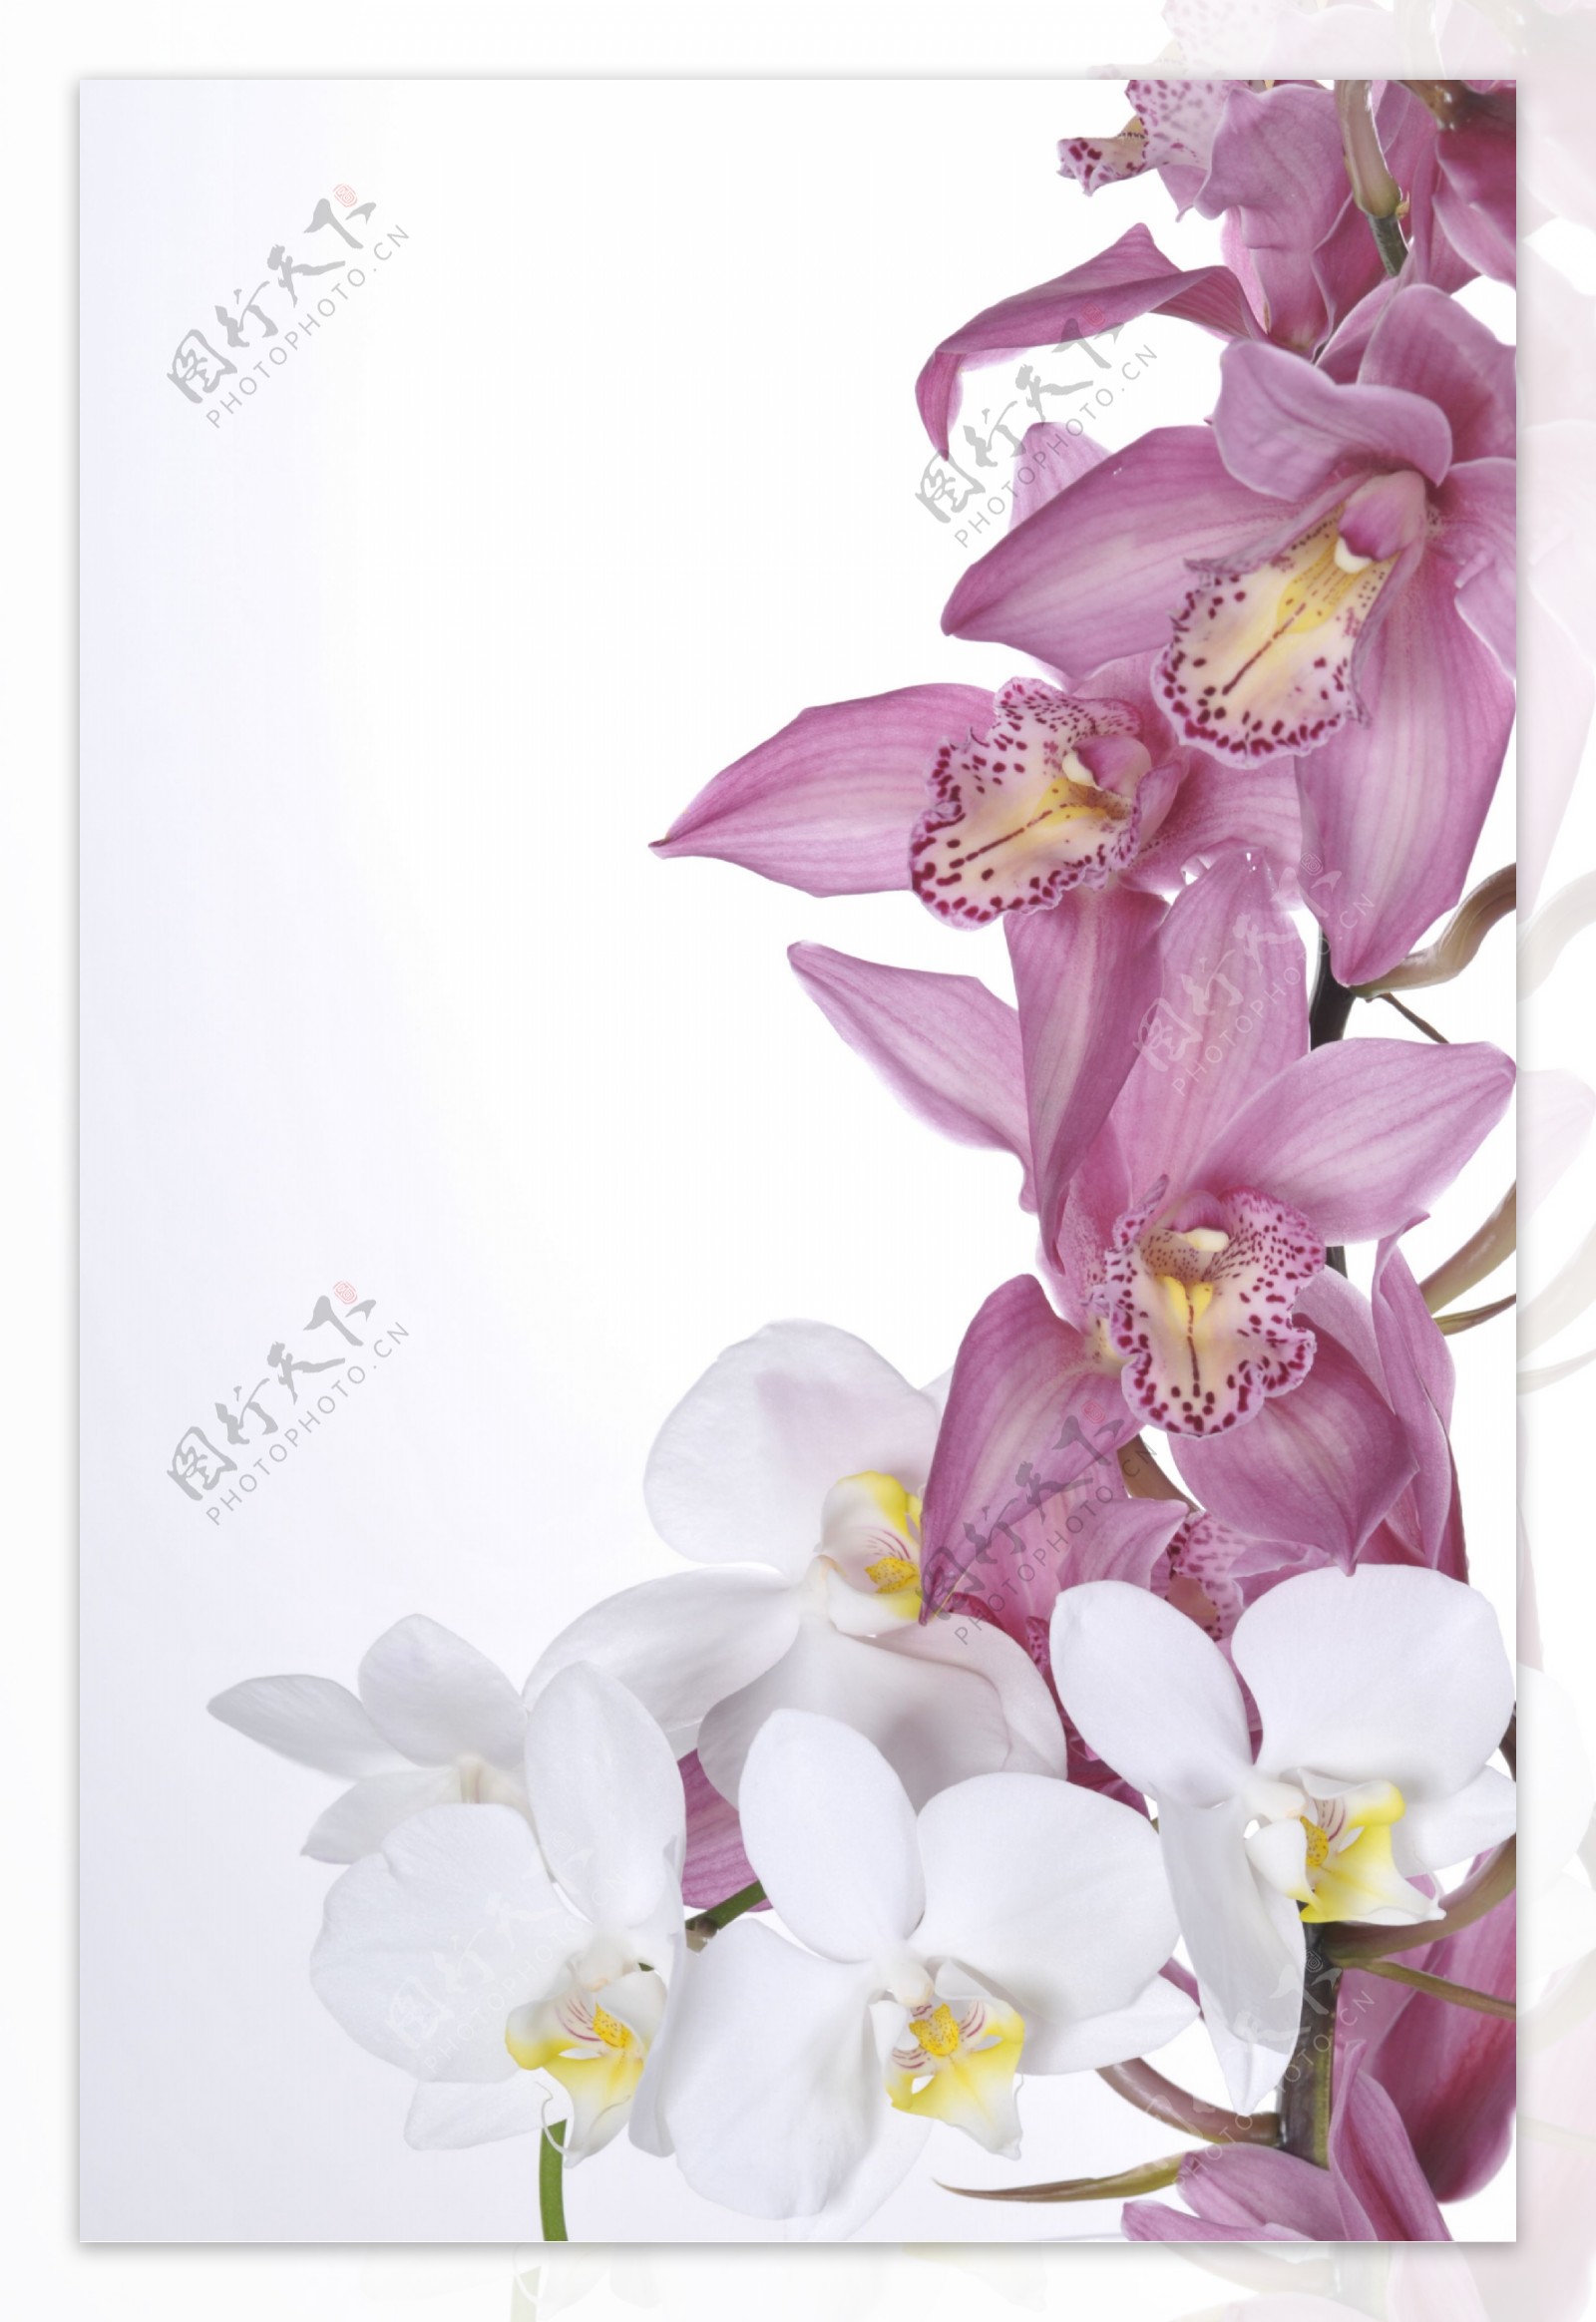 粉色和白色花朵图片